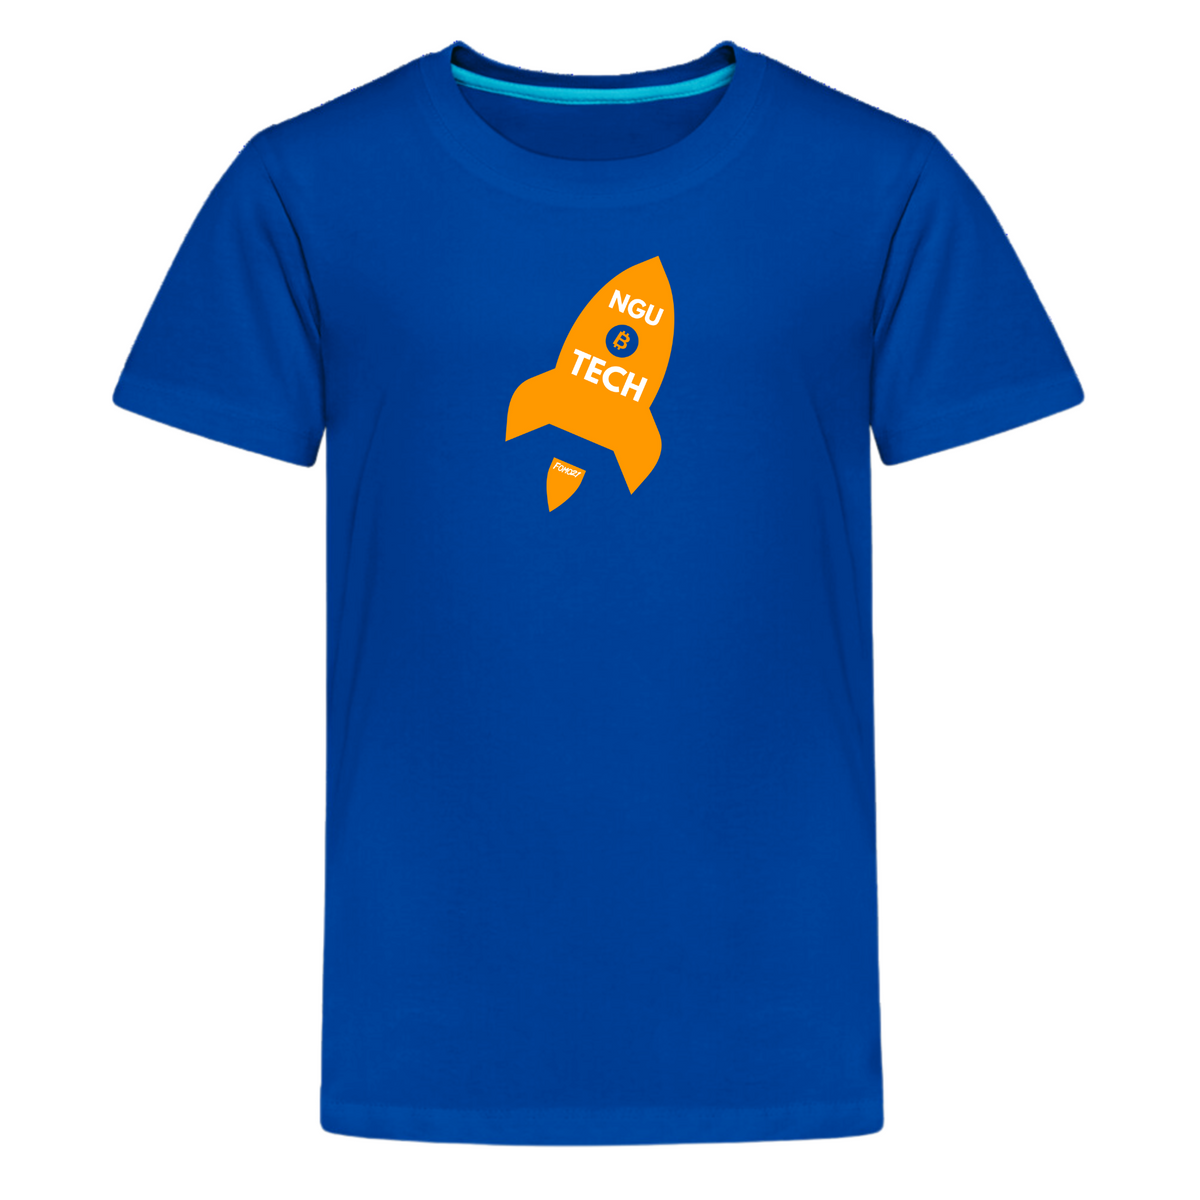 NGU Tech Bitcoin Youth T-Shirt - fomo21